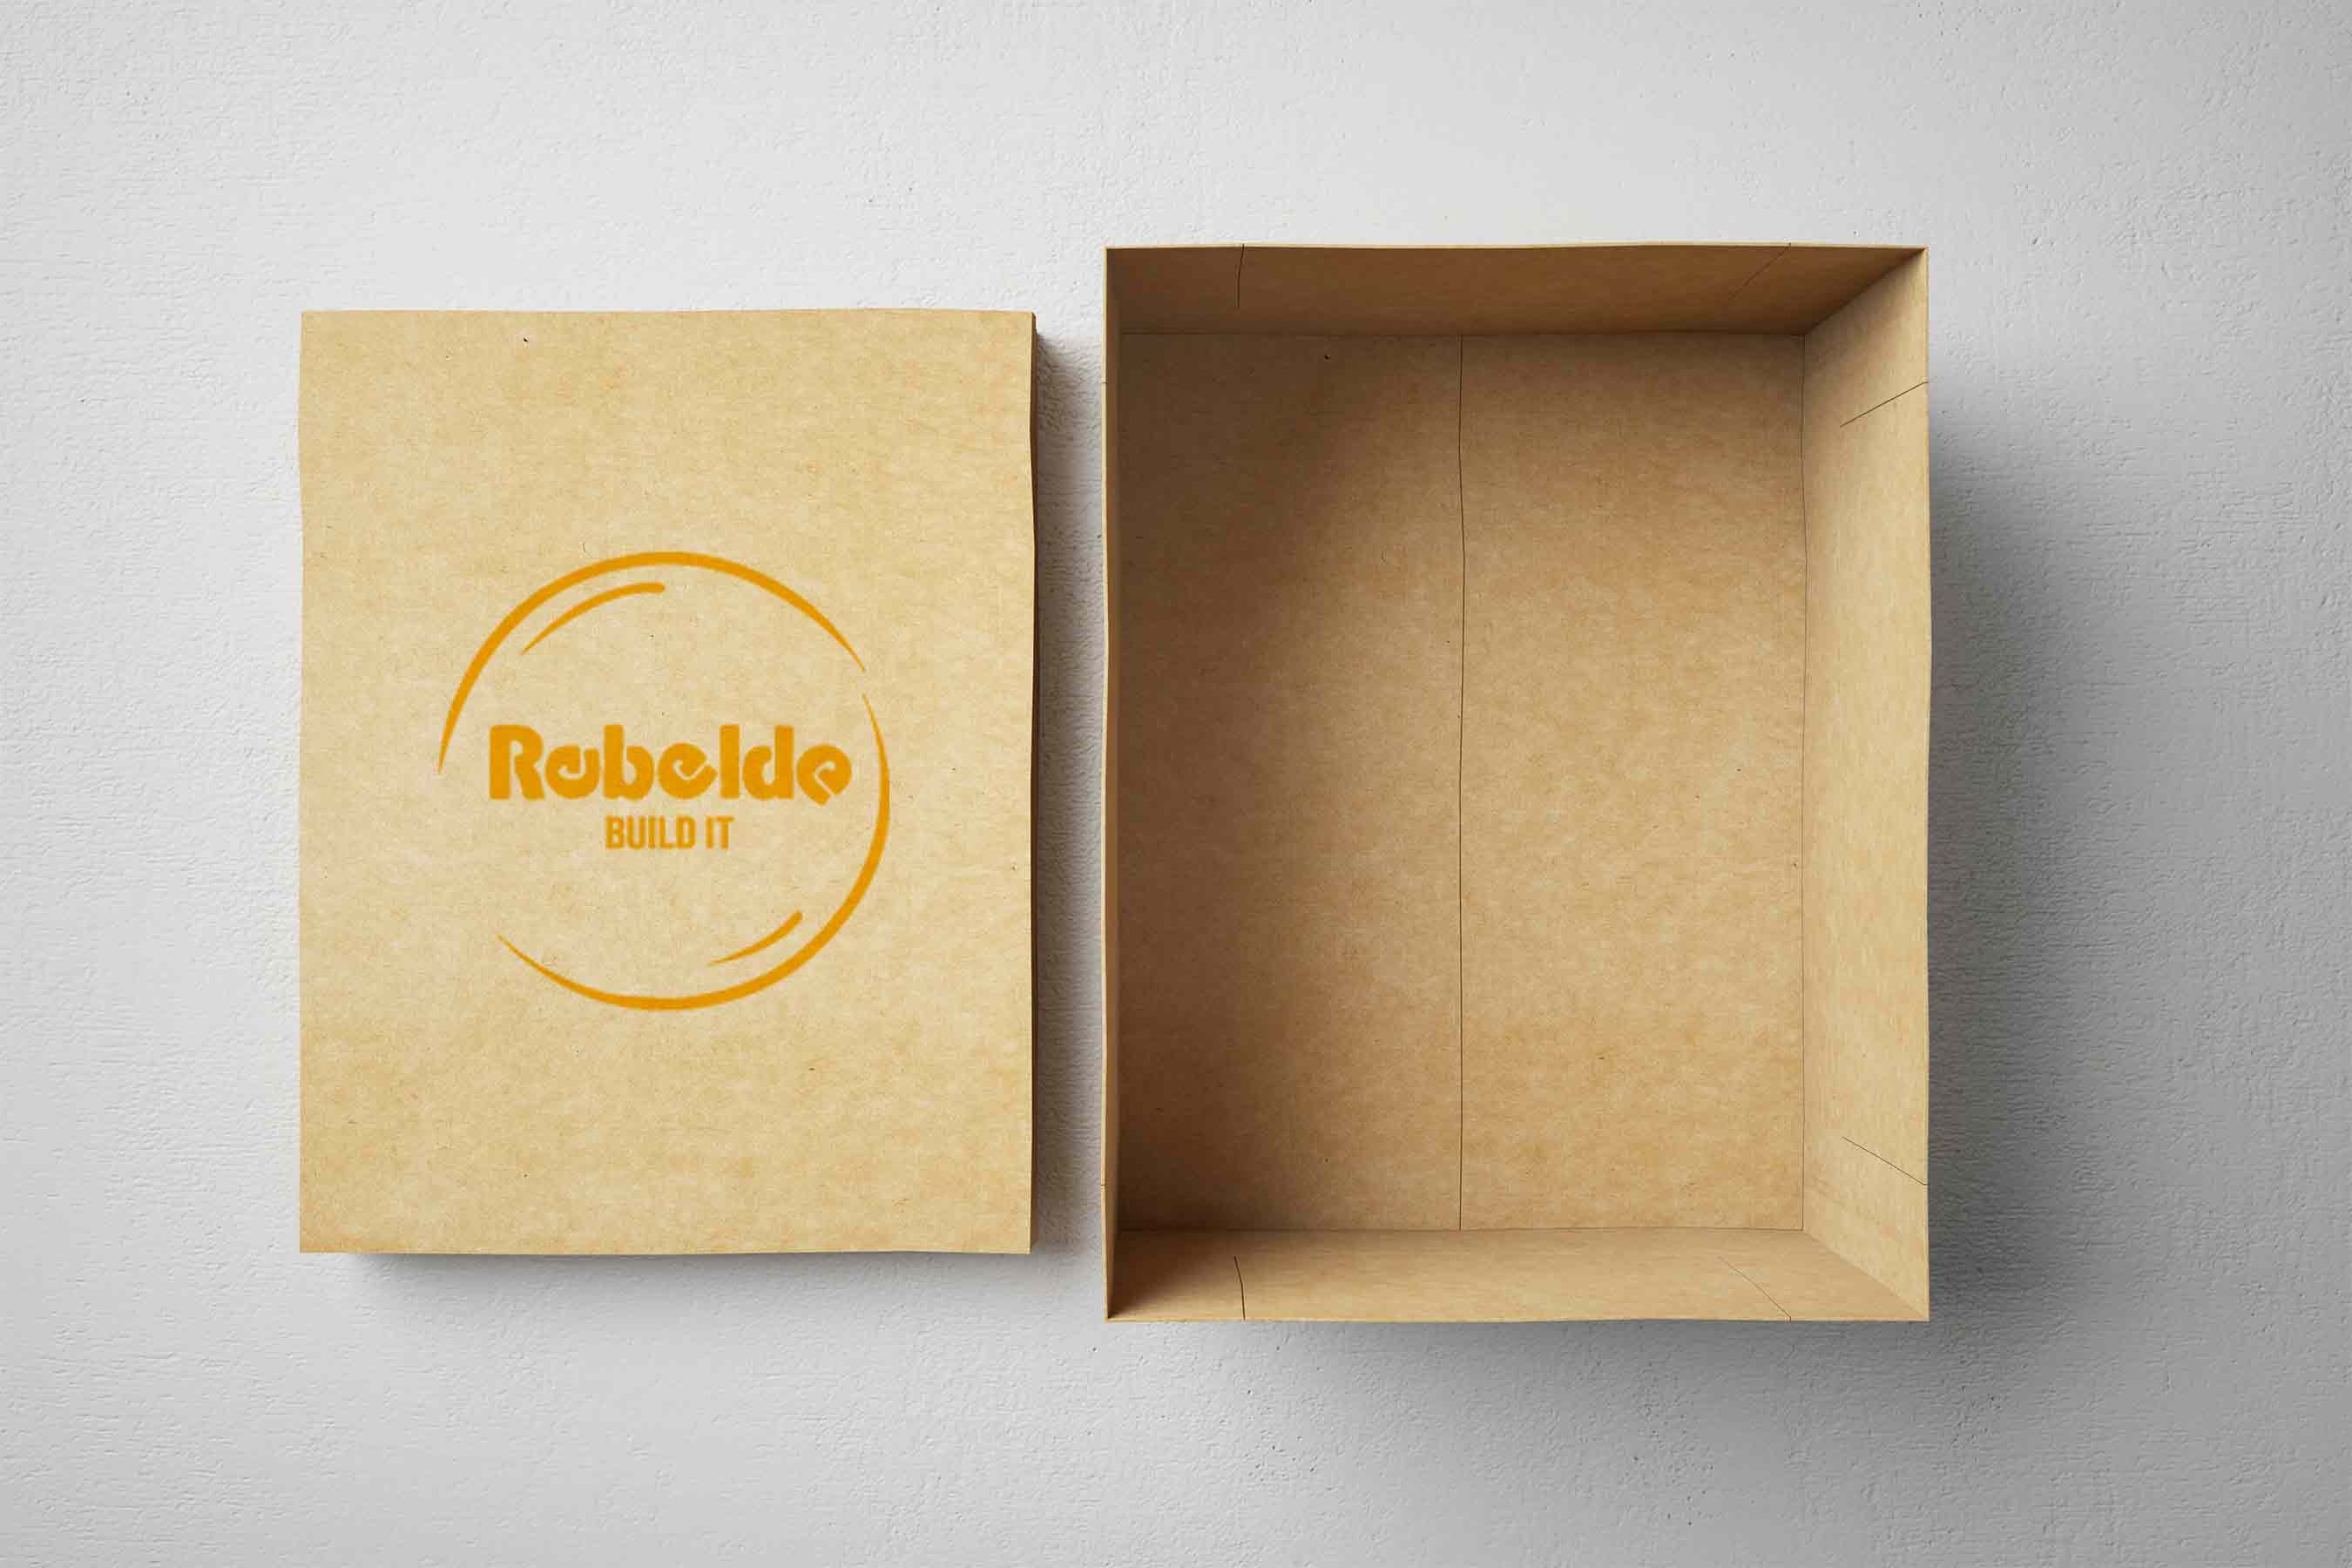 Caixa de cartão personalizada com estampagem – Rebelde Build It